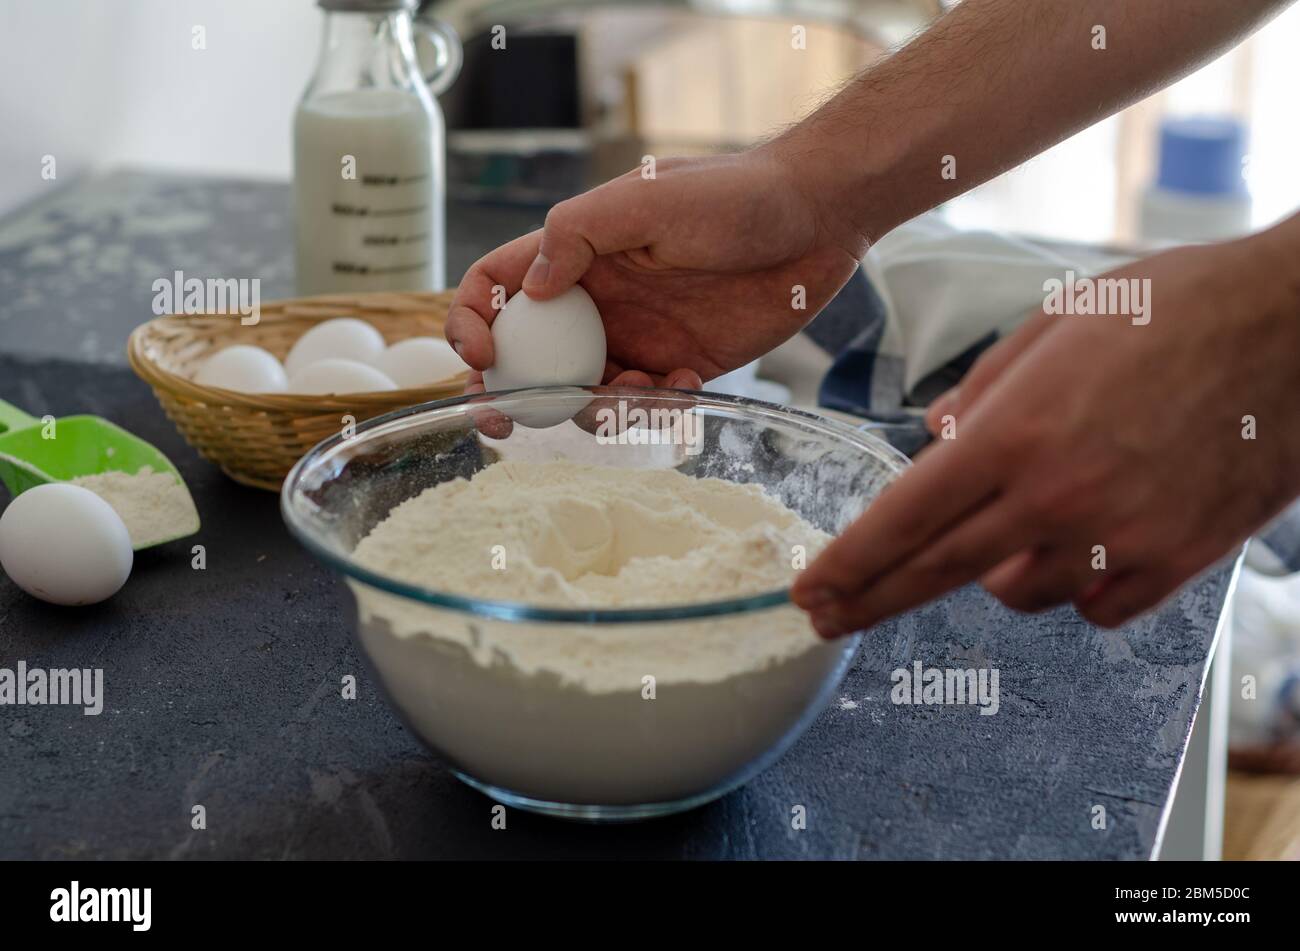 Der junge Mann bricht in der Küche Eier für Teig. Stockfoto